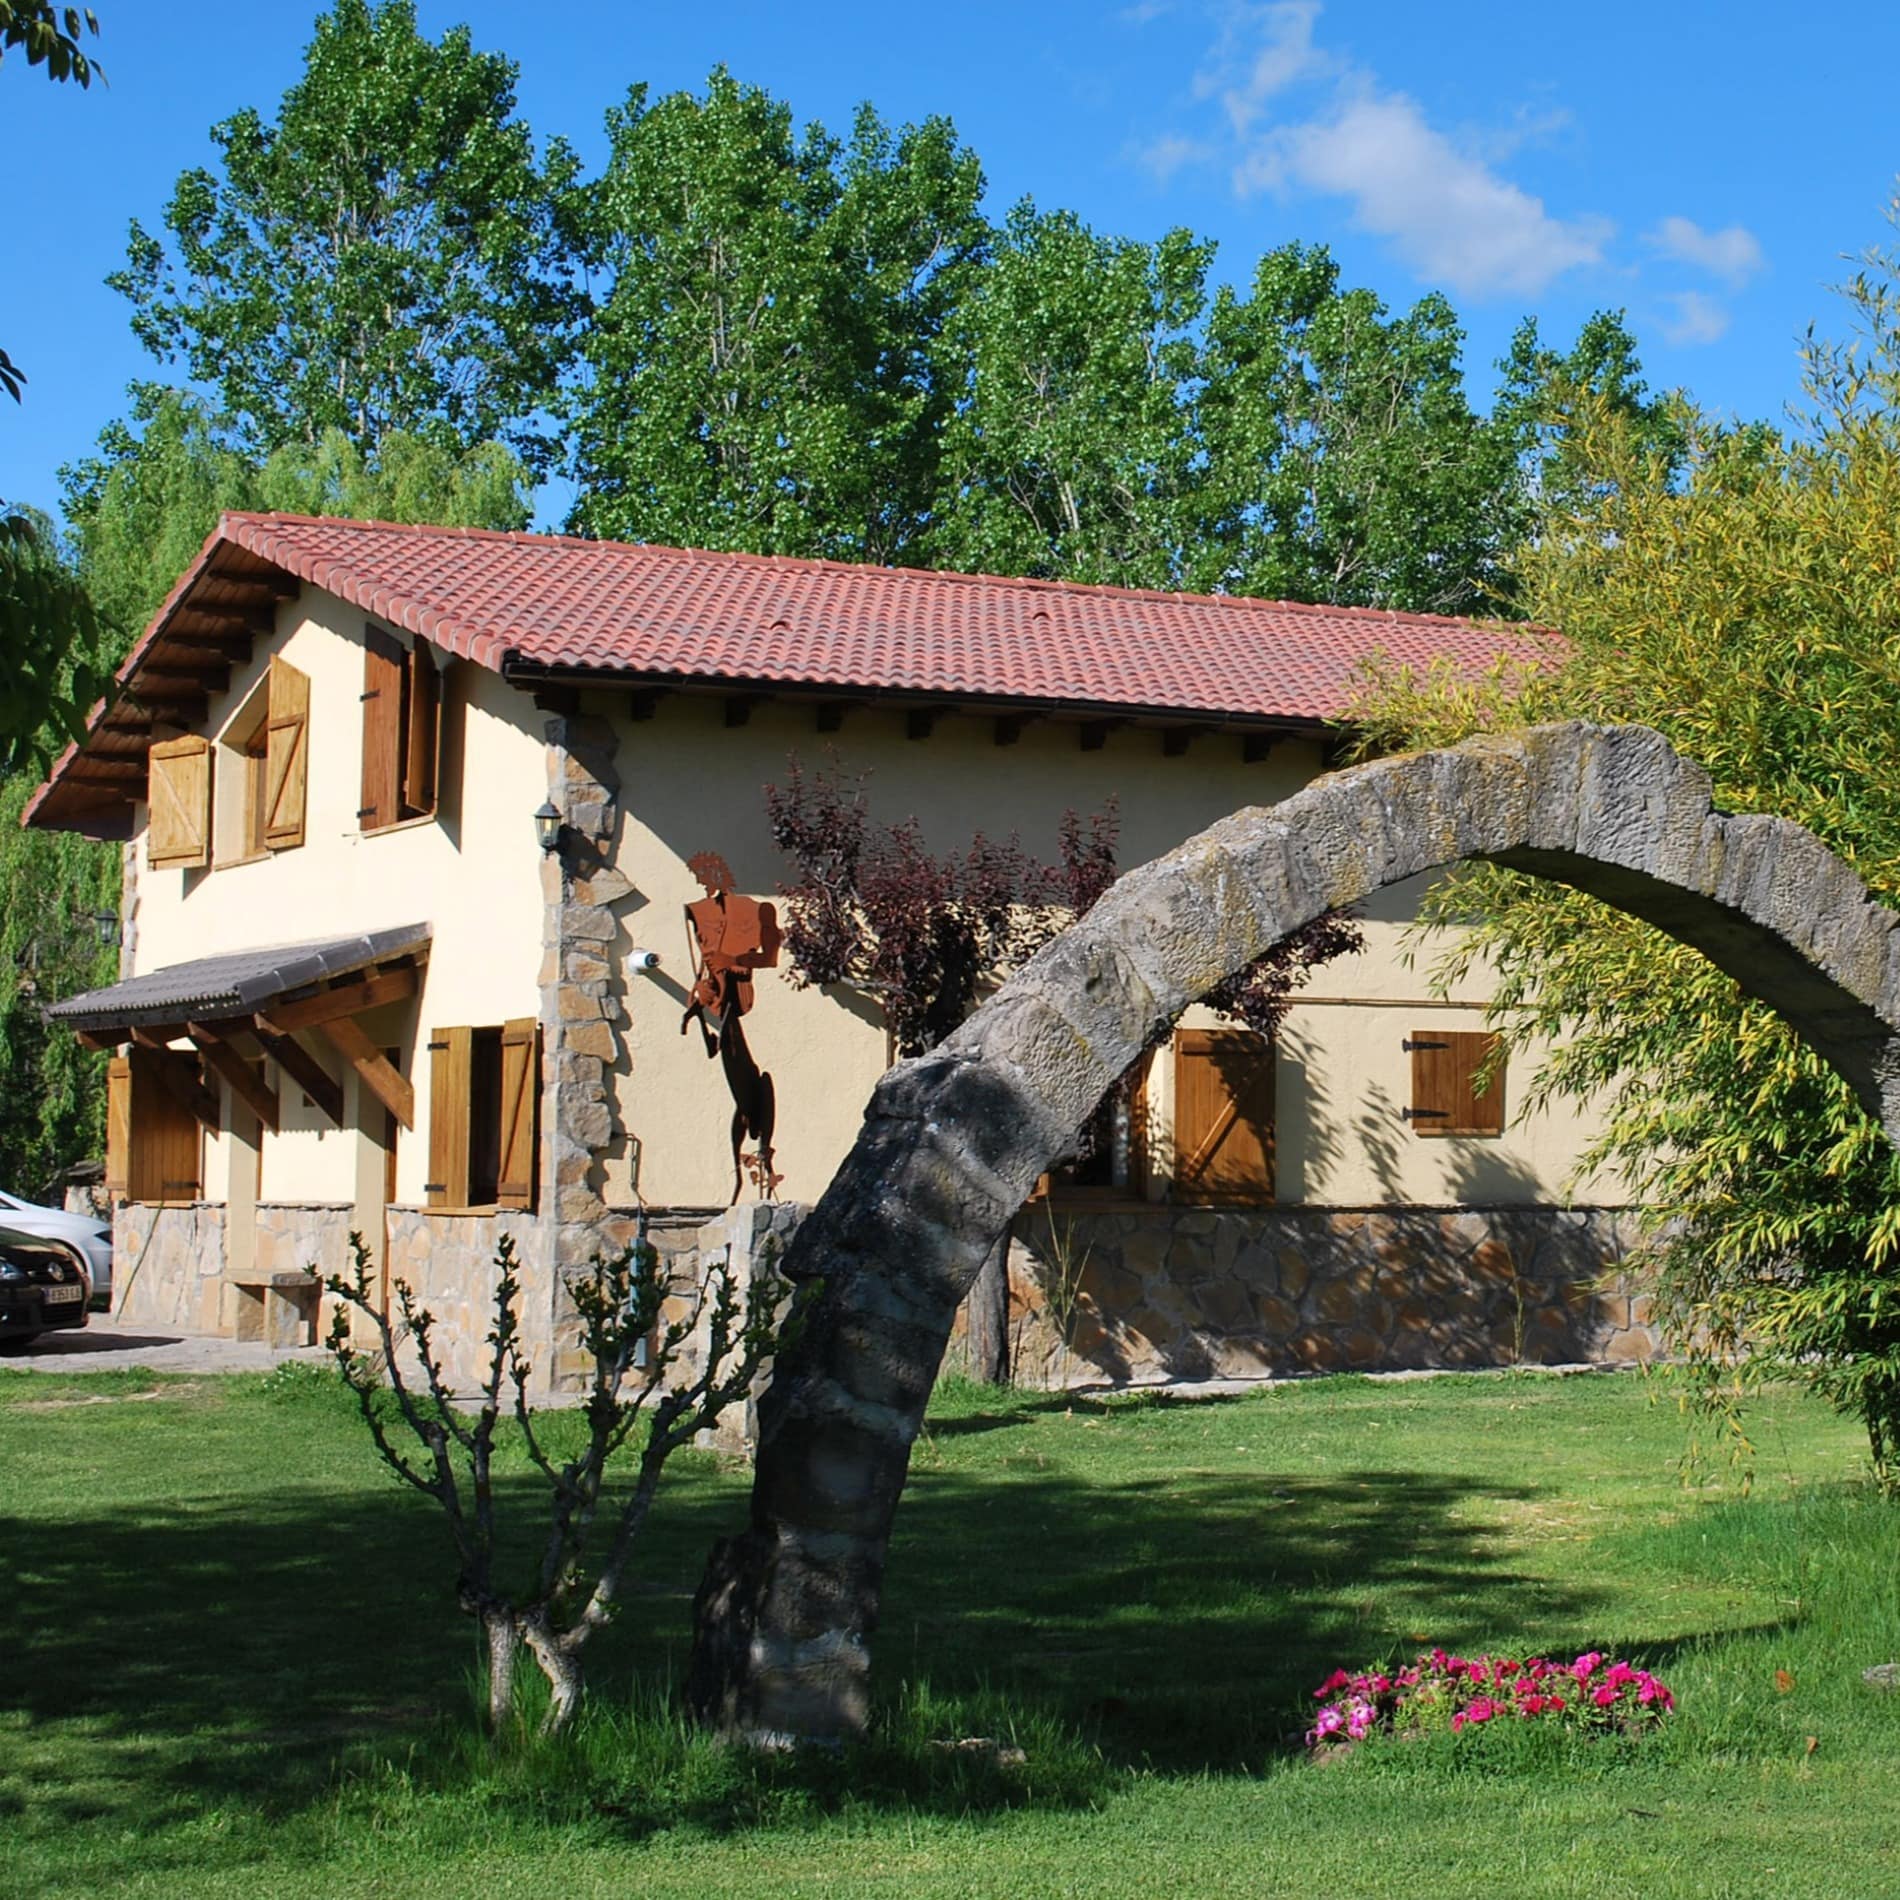 Casa rural con mucho encanto con un bonito arco de piedra en el jardín